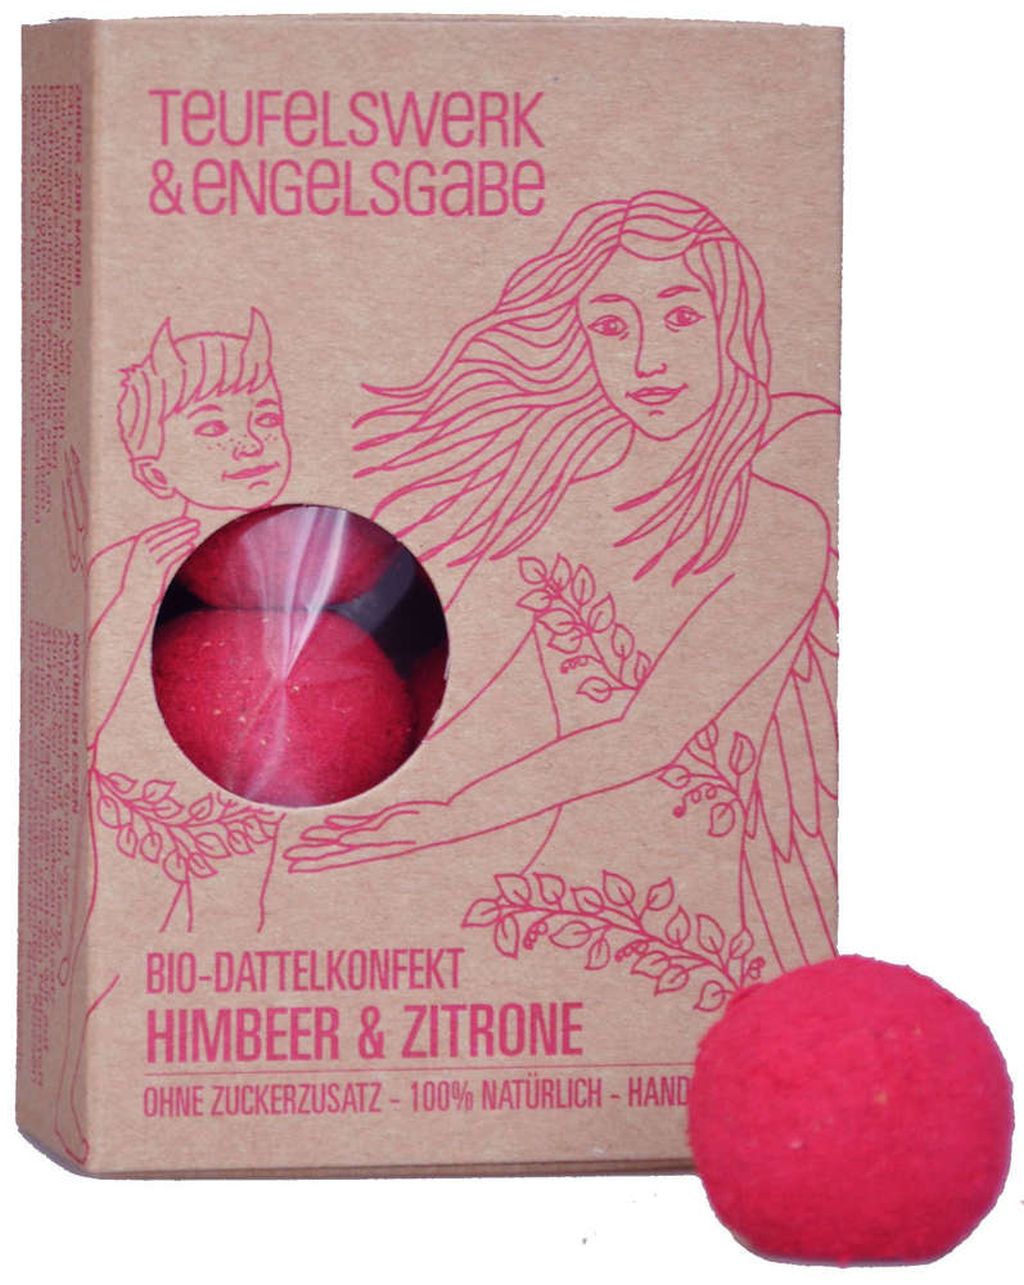 Bio-Dattelkonfekt Himbeer & Zitrone 84g